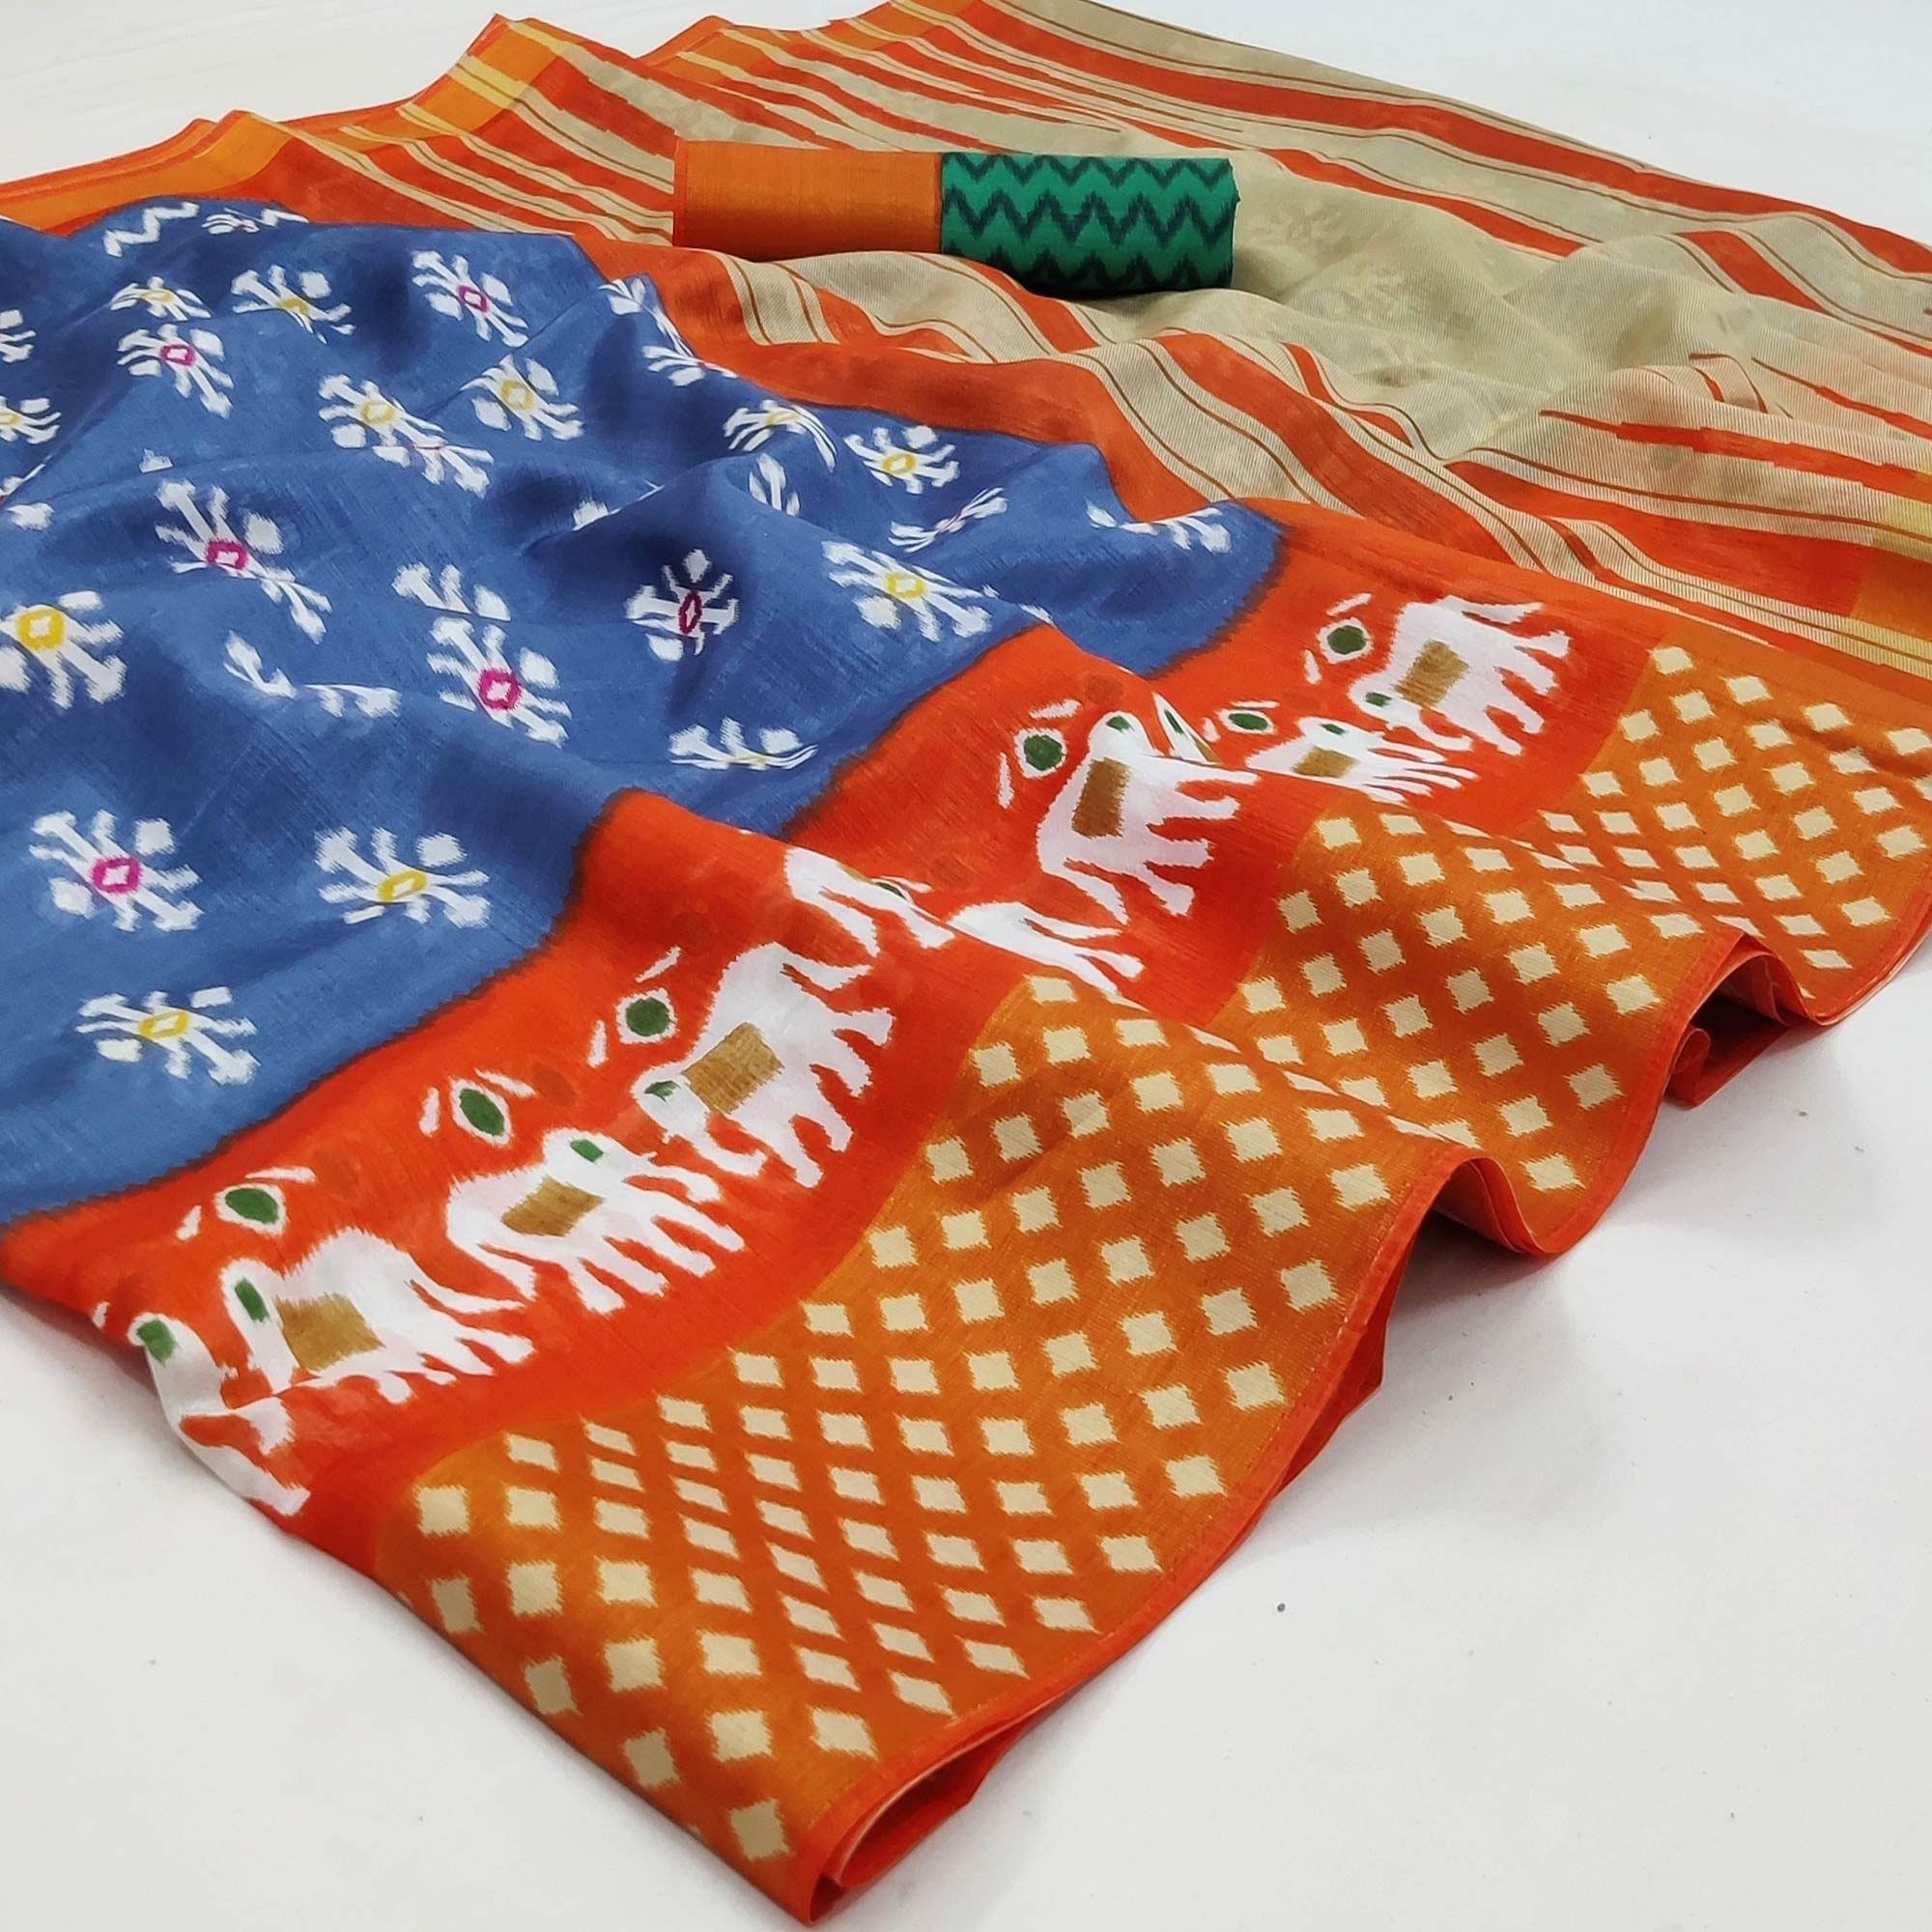 Multicolored Casual Wear Printed Cotton Saree With Jari Border - Peachmode